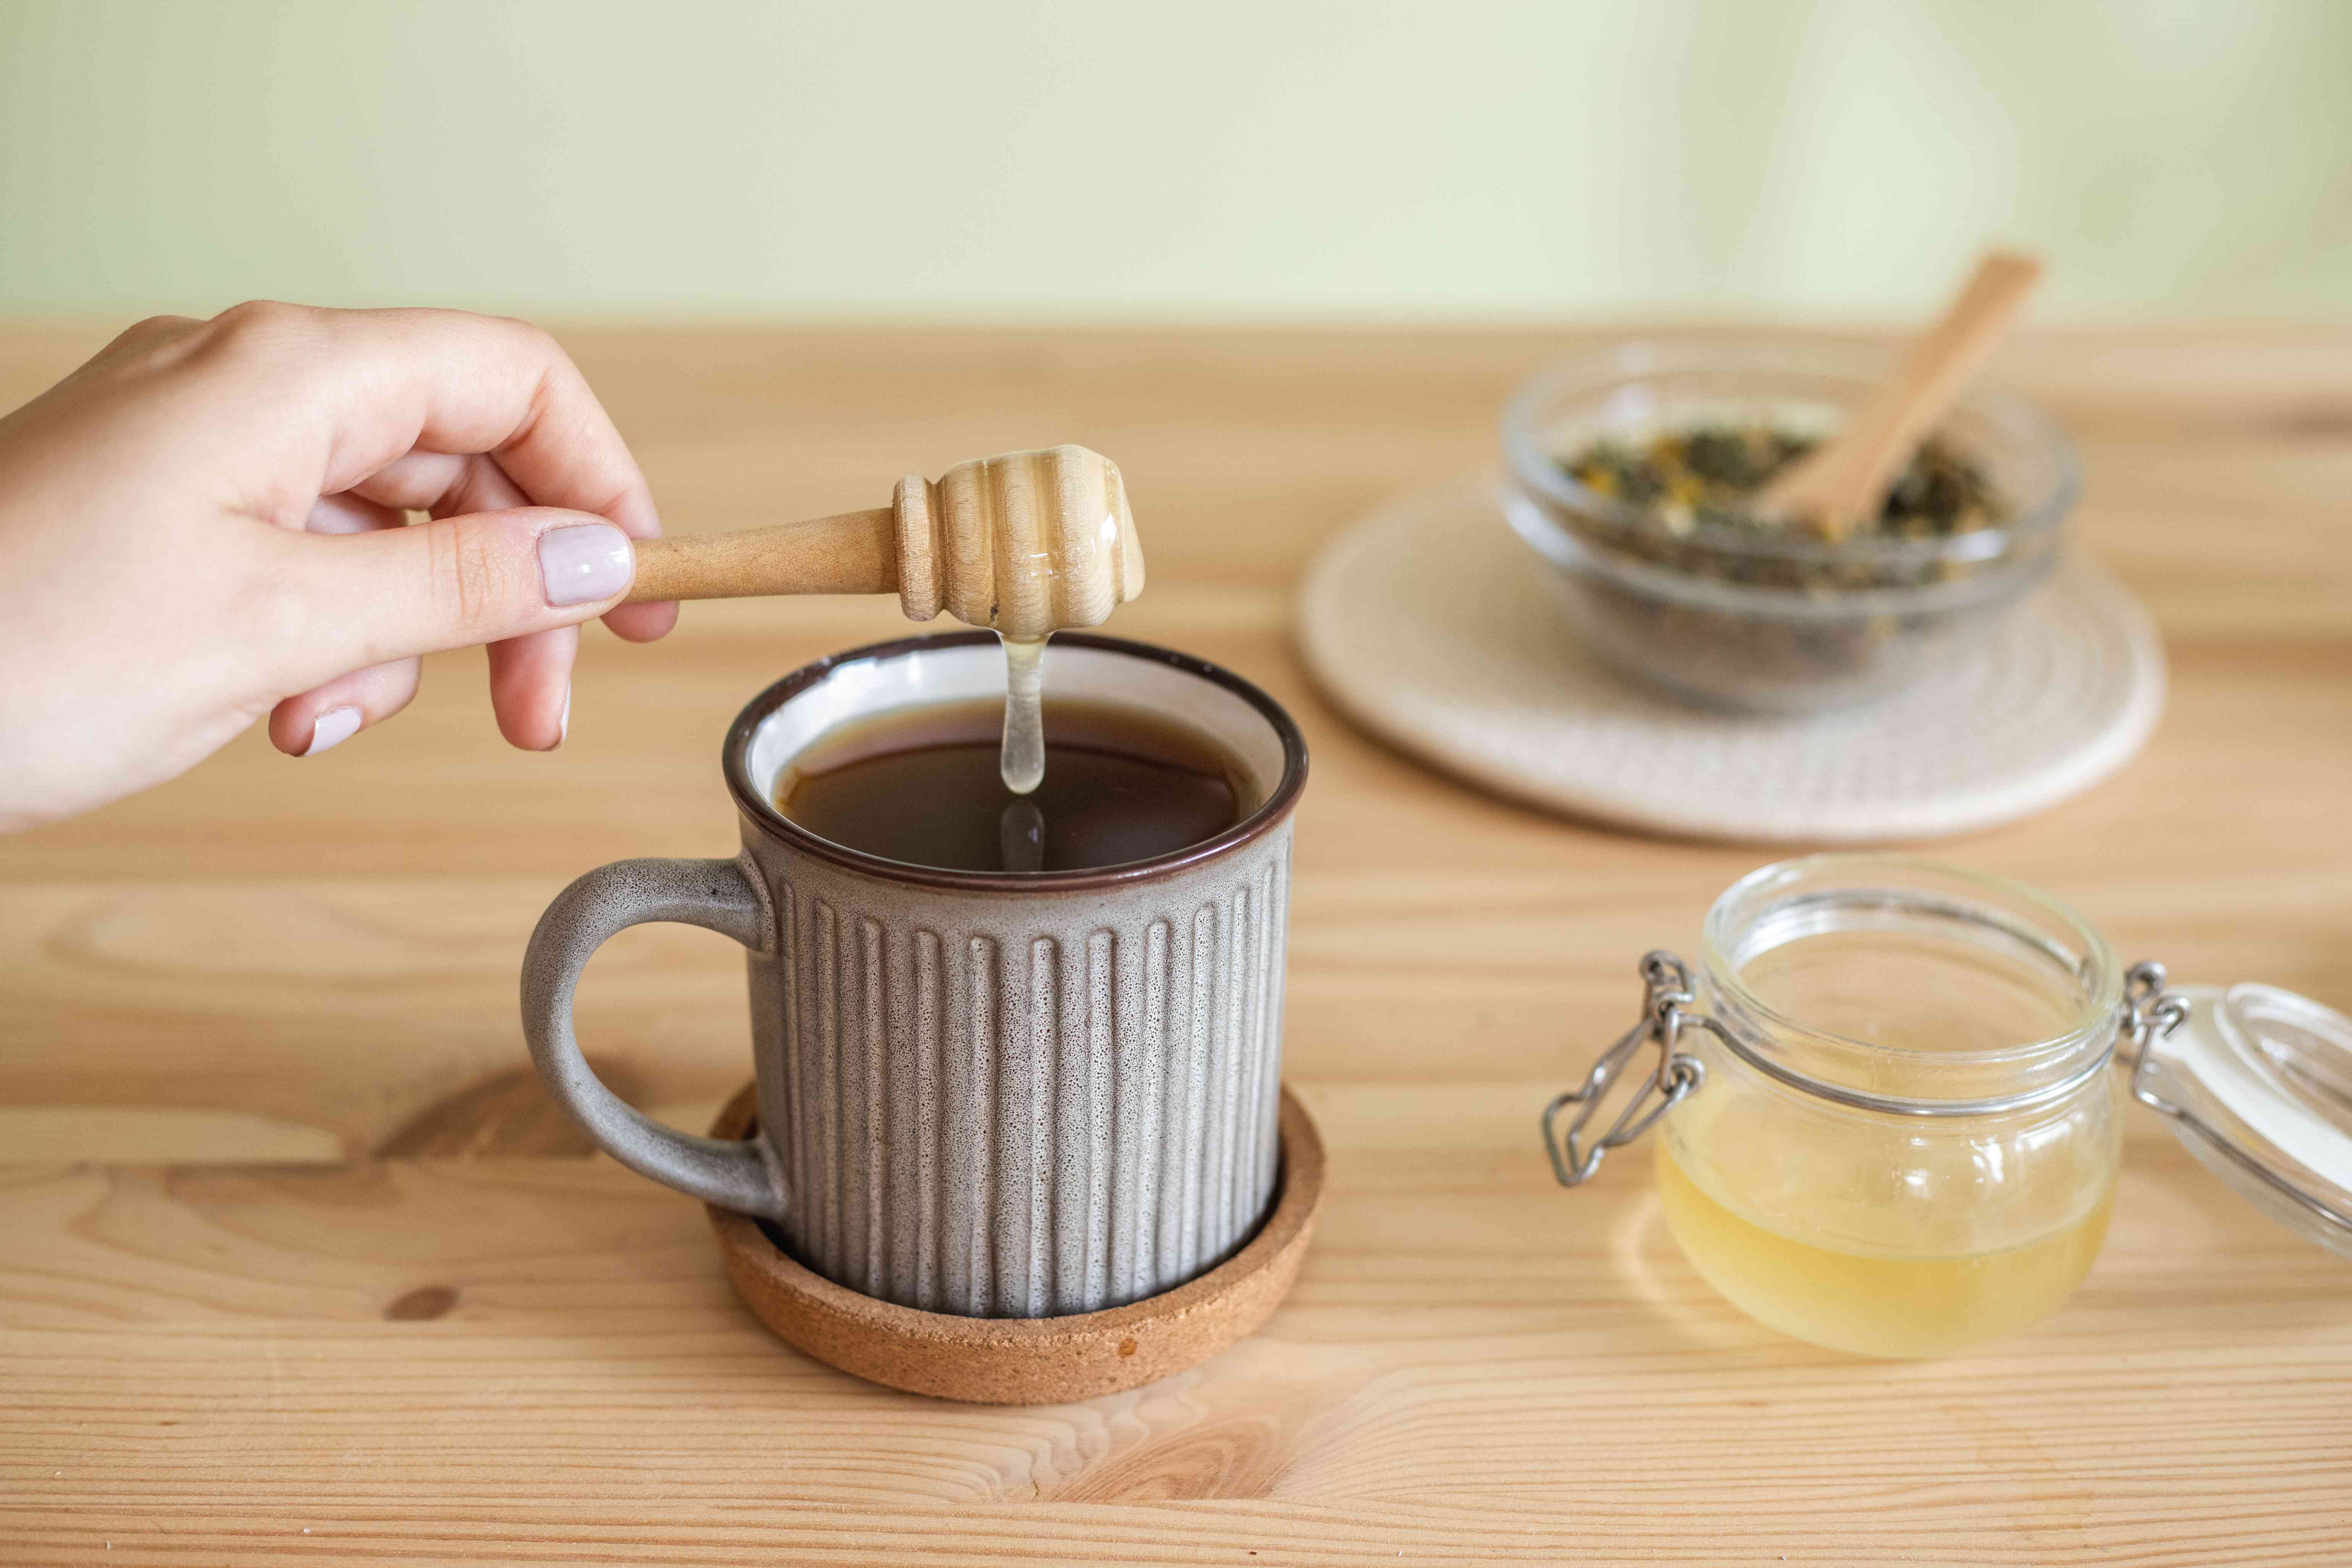 手用木制蜂蜜勺将蜂蜜滴入热茶杯中